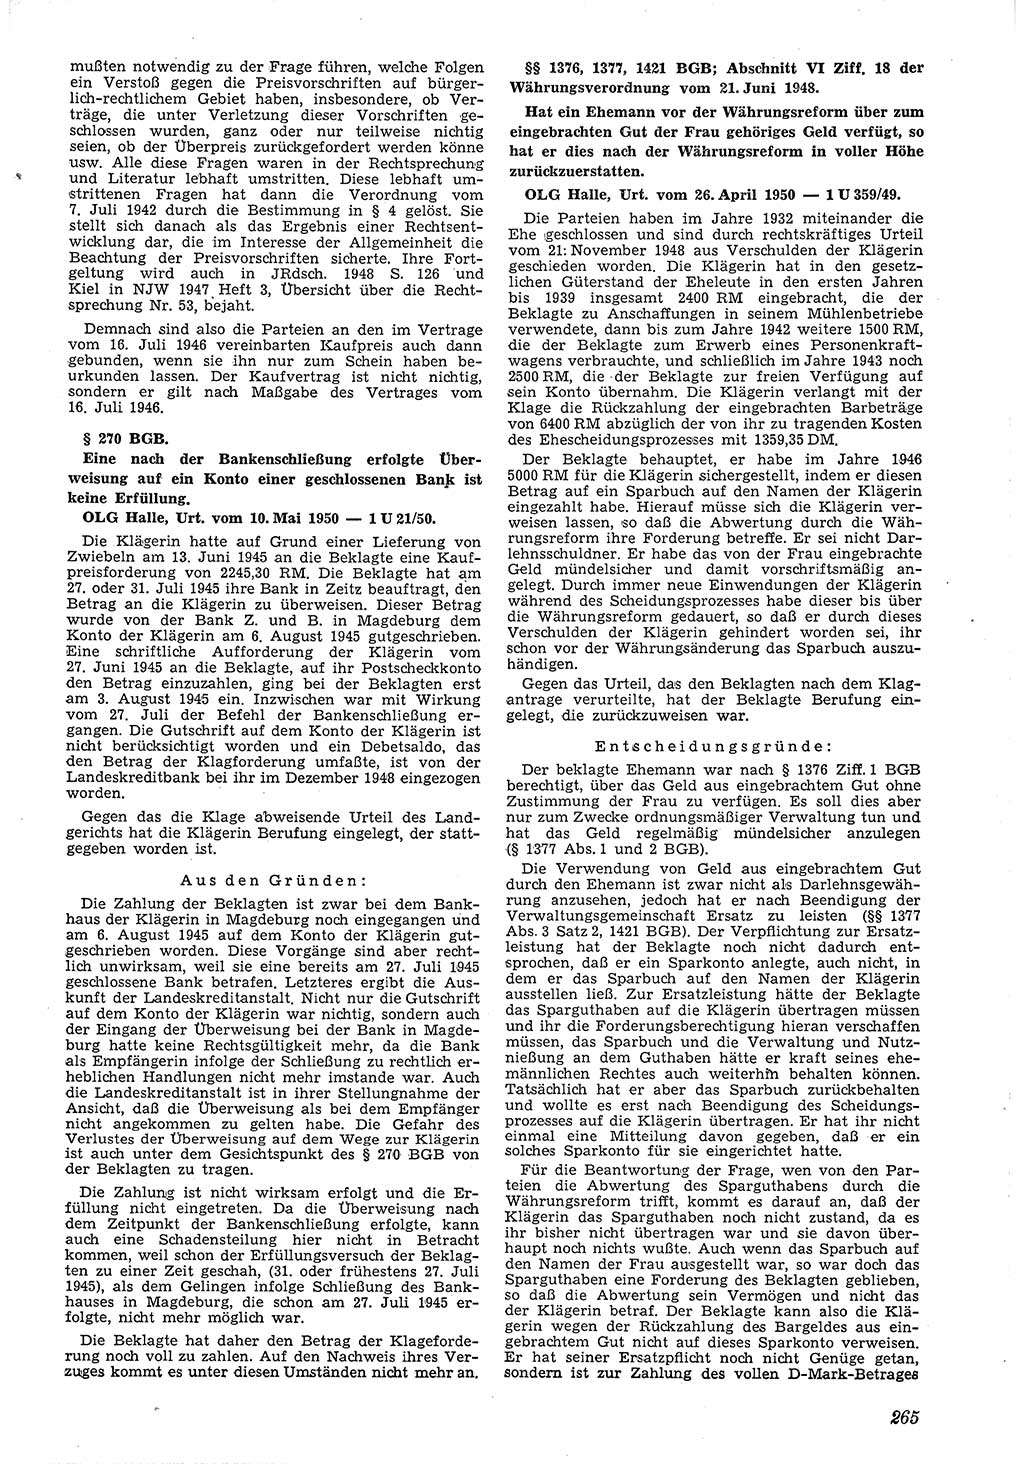 Neue Justiz (NJ), Zeitschrift für Recht und Rechtswissenschaft [Deutsche Demokratische Republik (DDR)], 4. Jahrgang 1950, Seite 265 (NJ DDR 1950, S. 265)